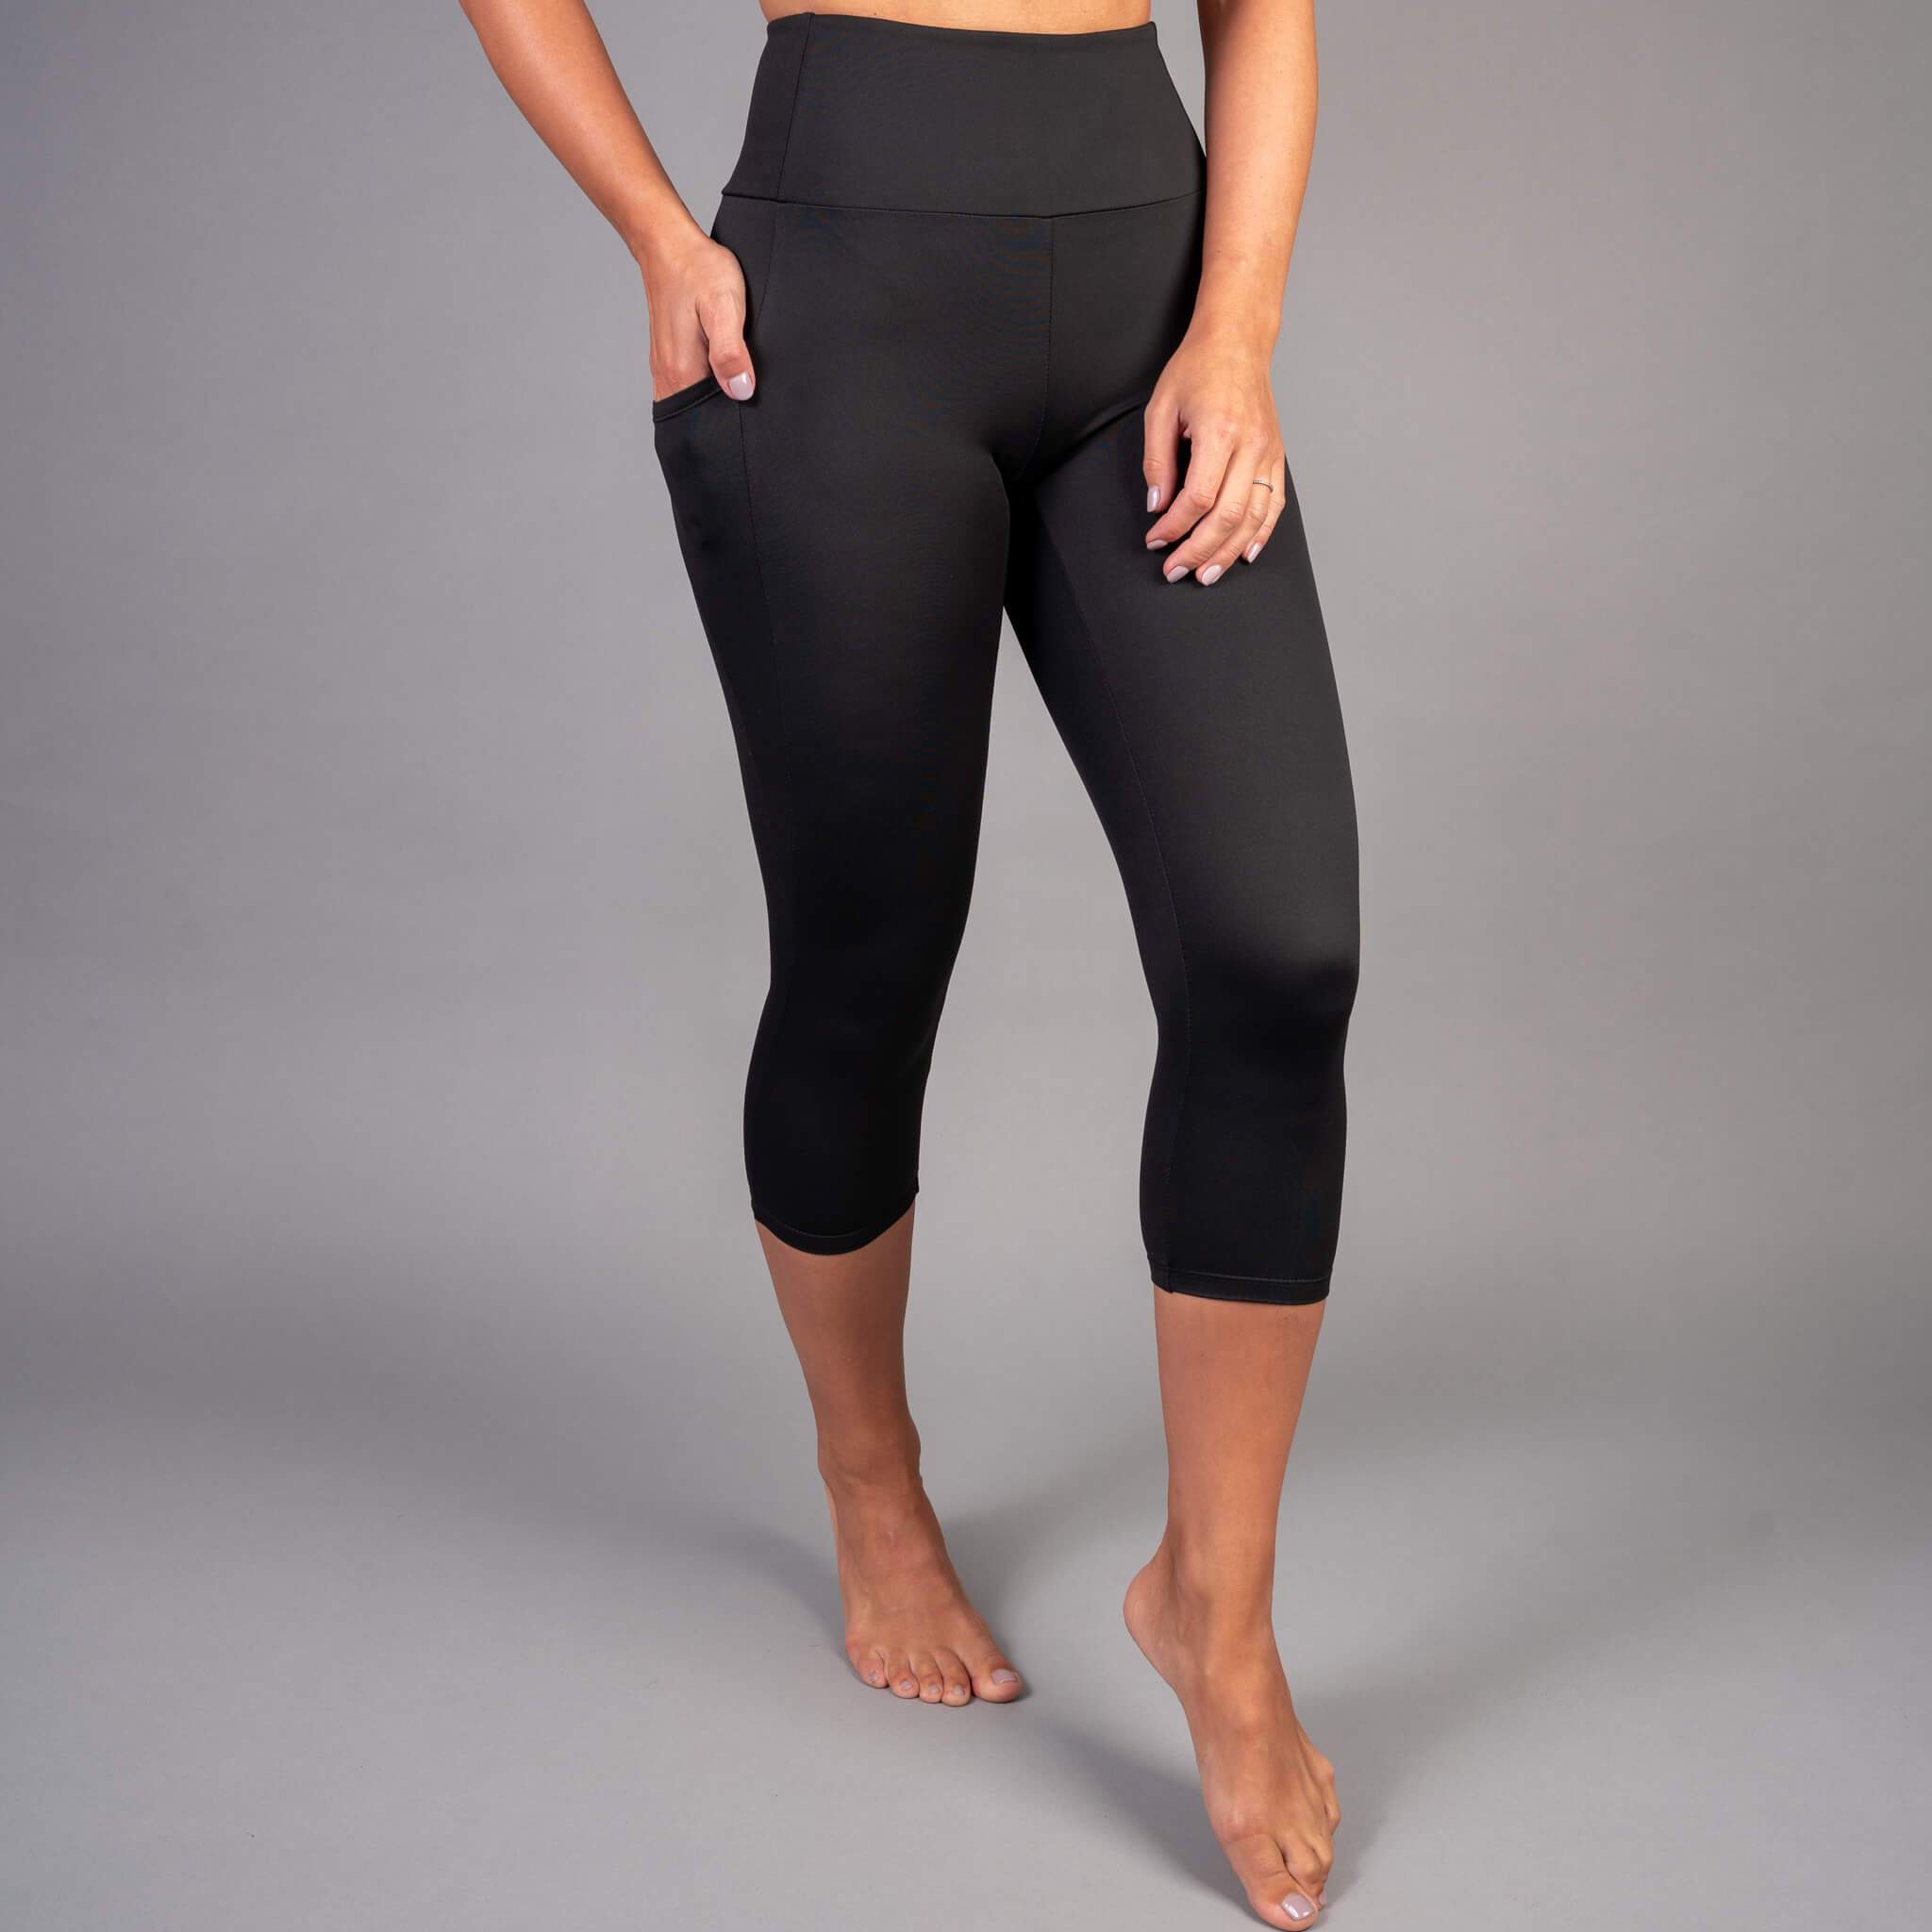 Red on Black Capri Leggings for Women Butt Lift Yoga Pants for Women Tummy  Control Leggings High Waisted – Fire Fit Designs